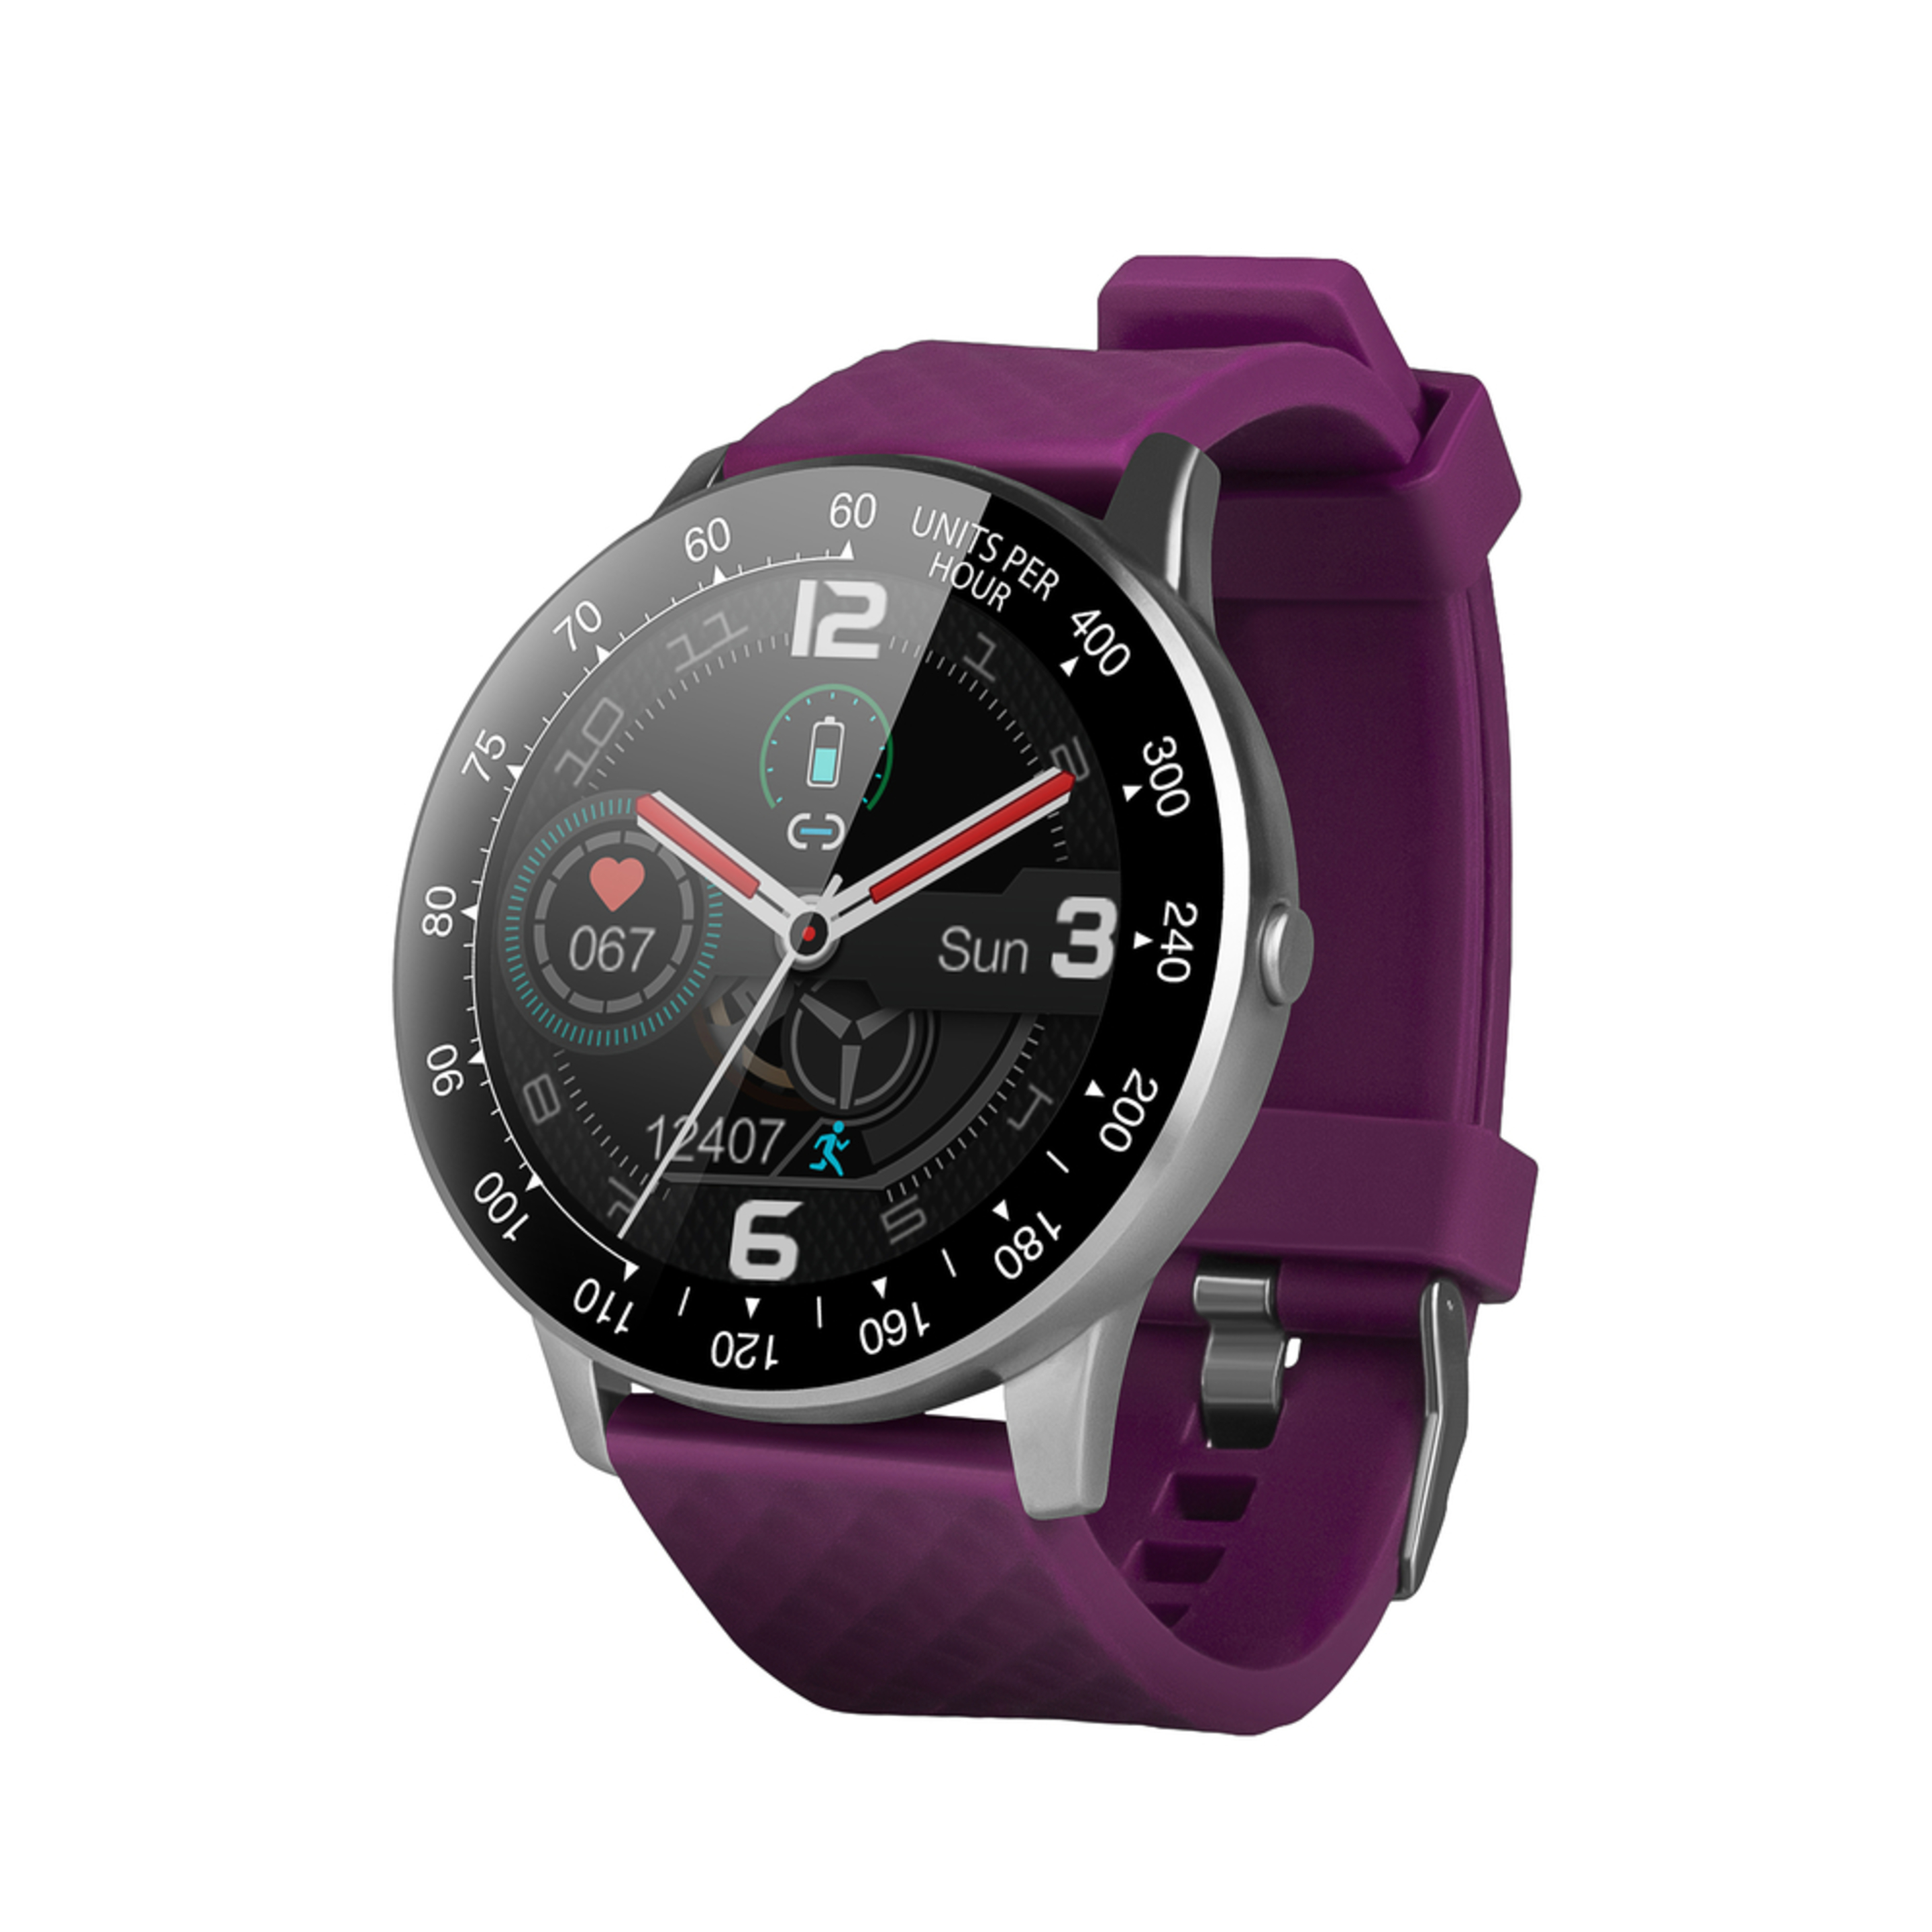 Smartwatch Inteligente Deportivo Smartek Sw-150 Purpura